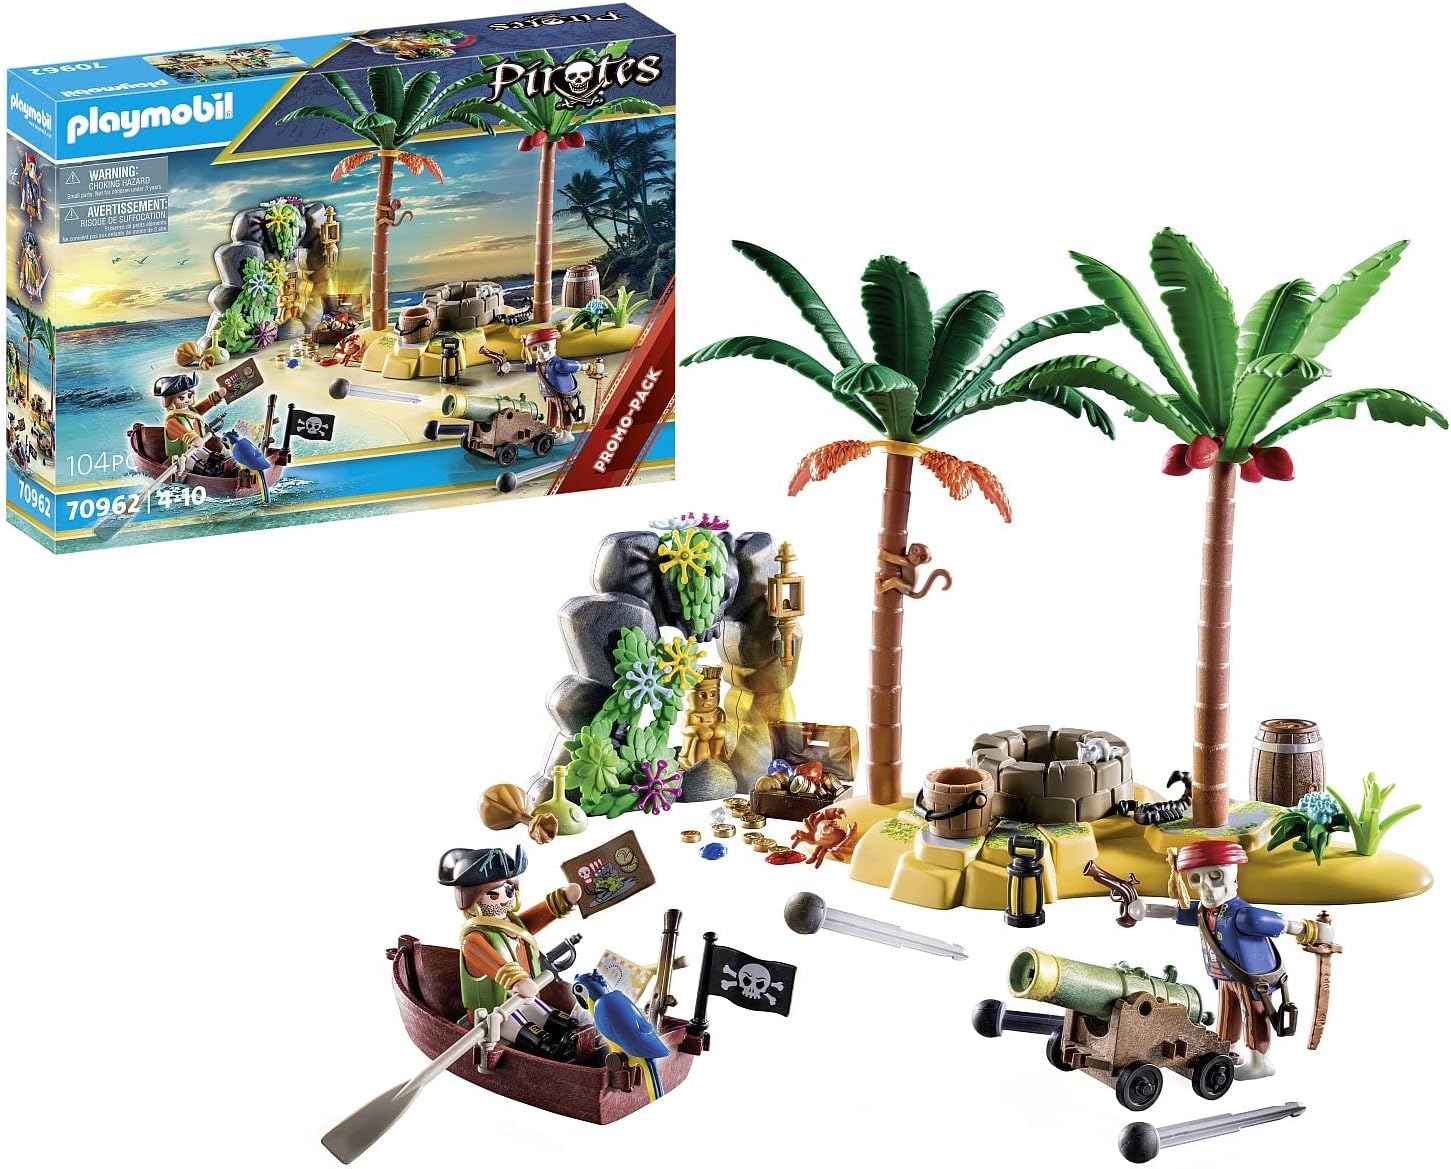 Playmobil Pirate Treasure Island with Skeleton